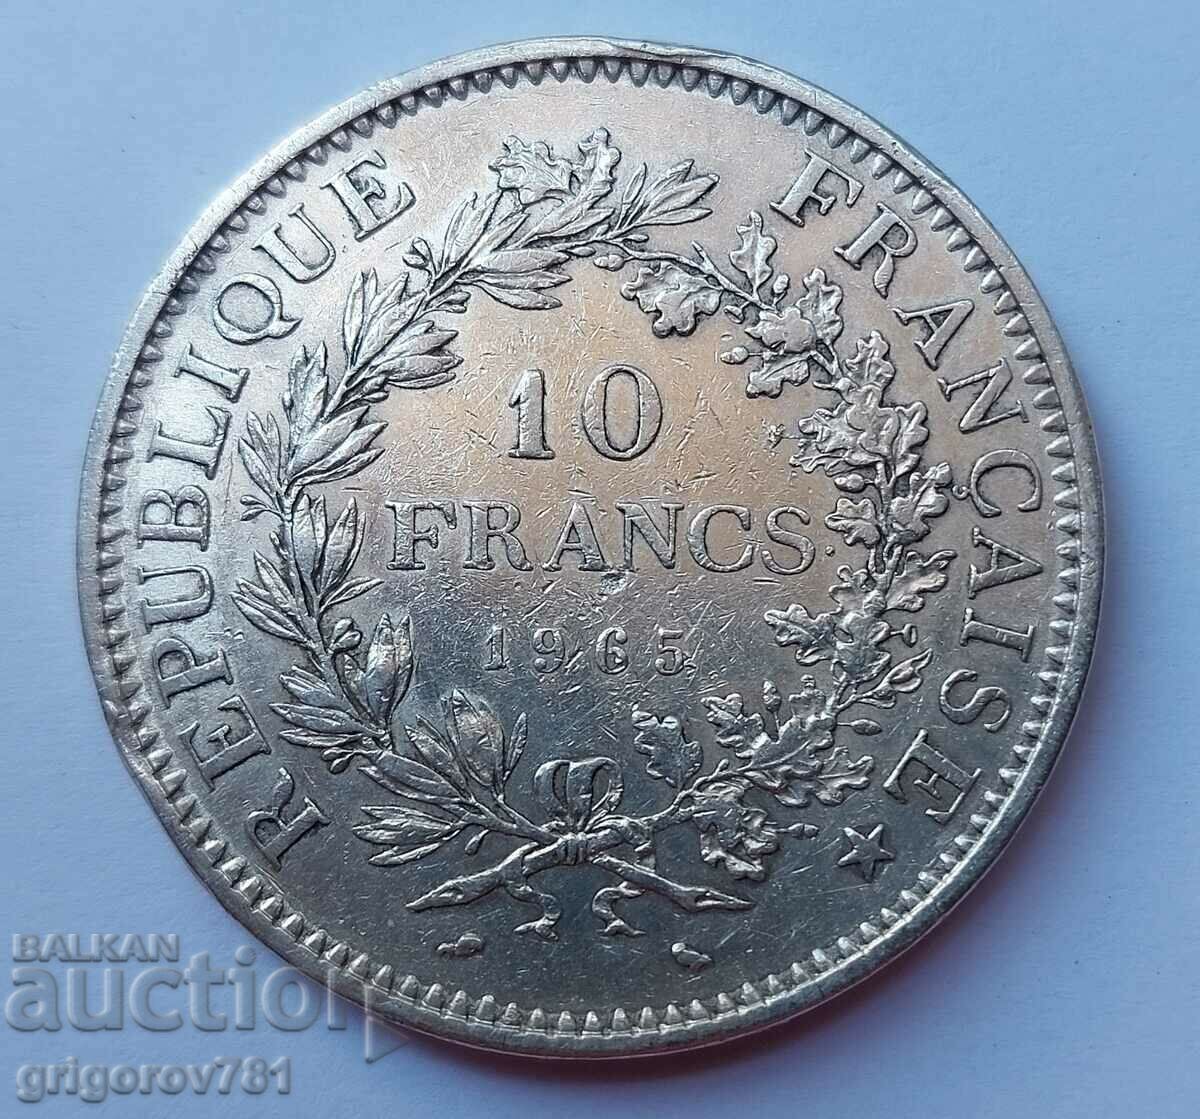 Ασημένιο 10 φράγκα Γαλλία 1965 - ασημένιο νόμισμα # 1